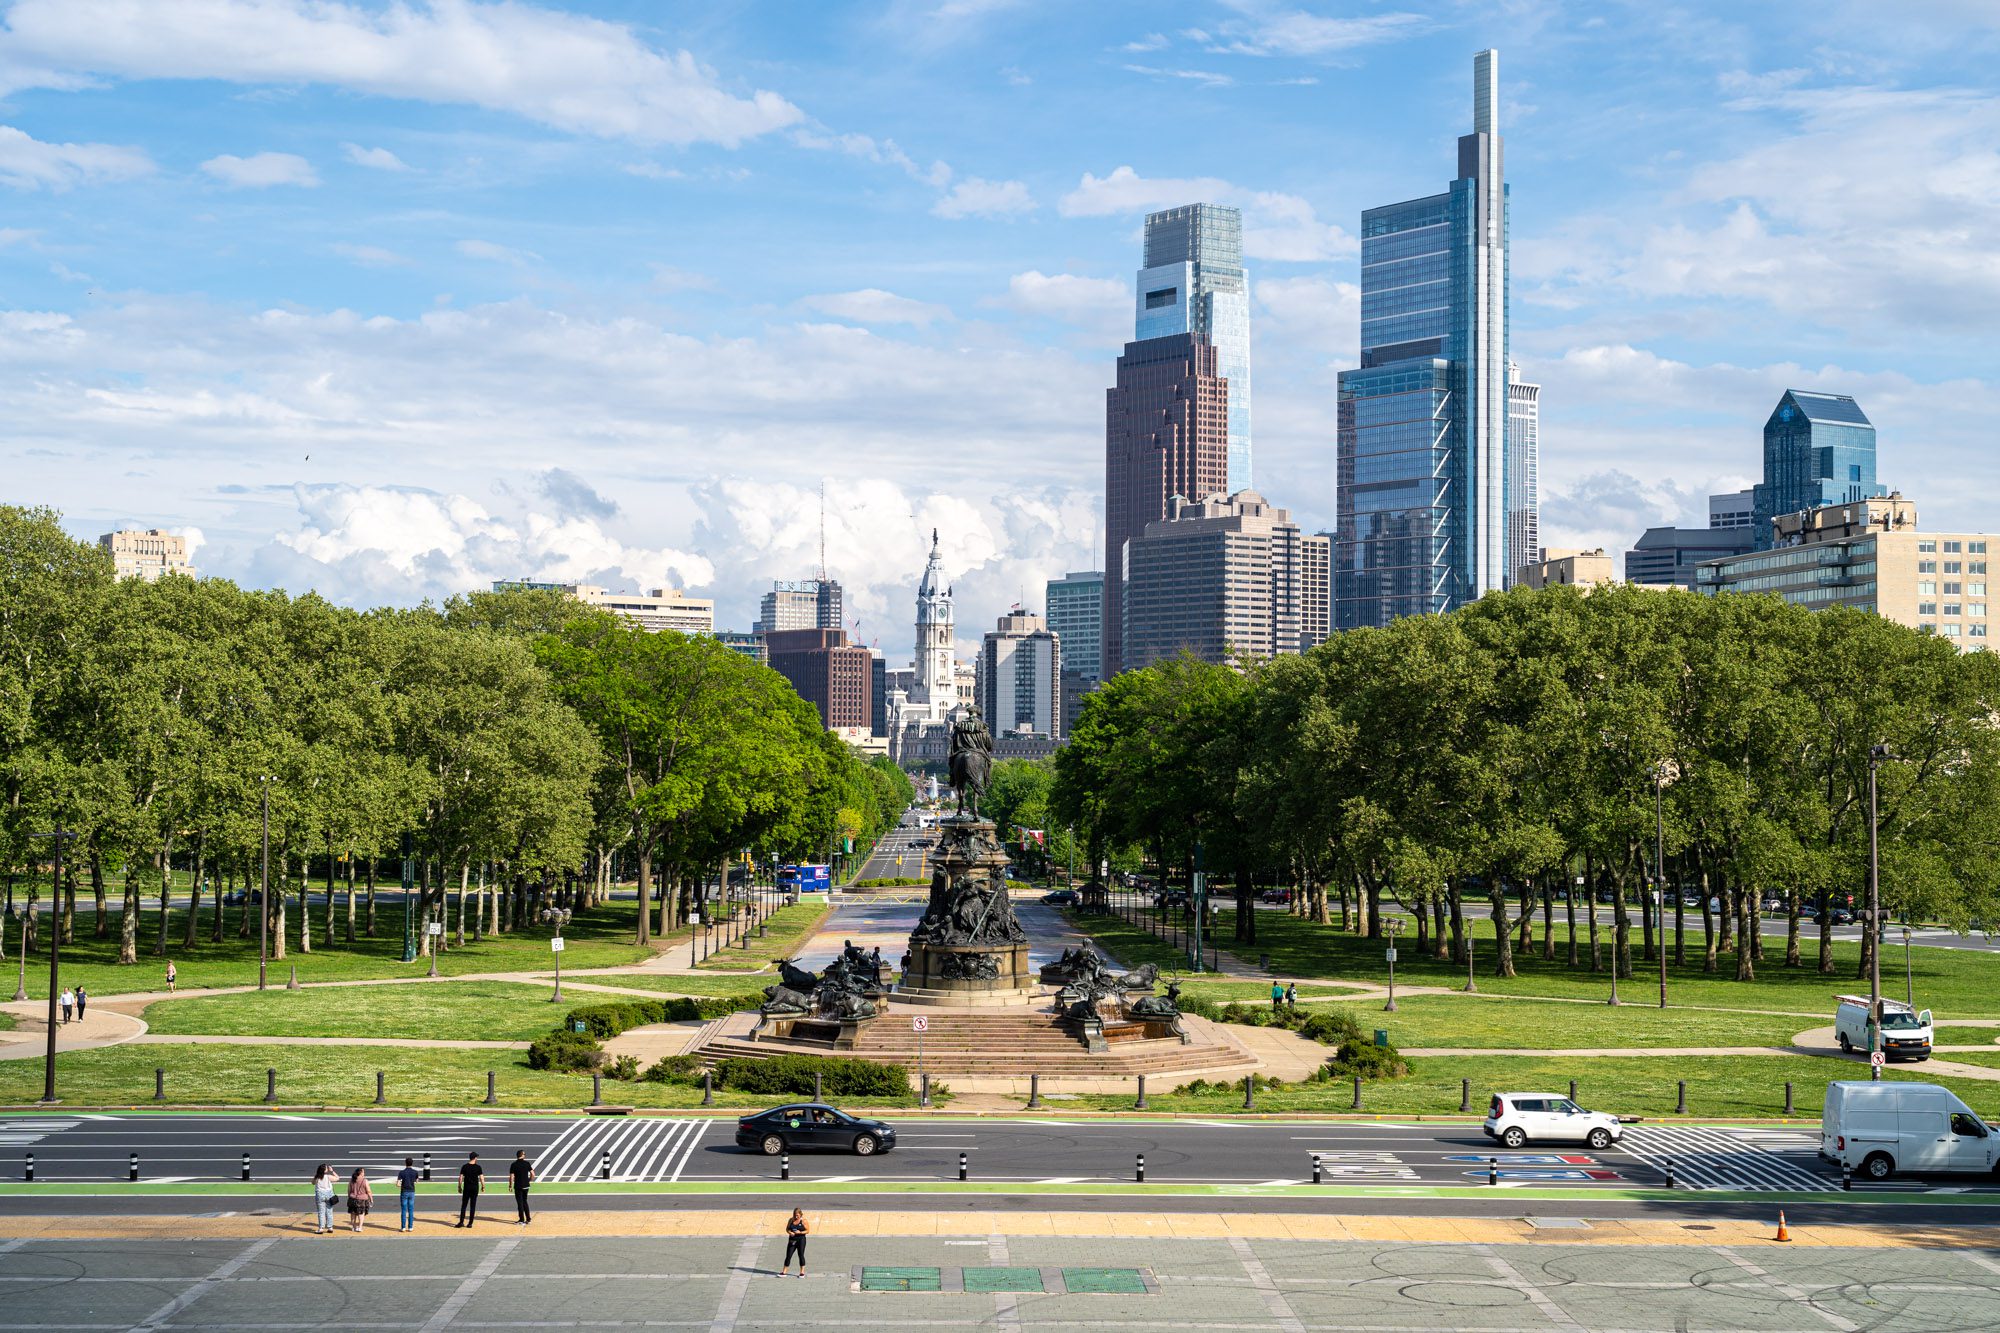 Philadelphia Revitalizes 125-Year-Old William Penn Statue